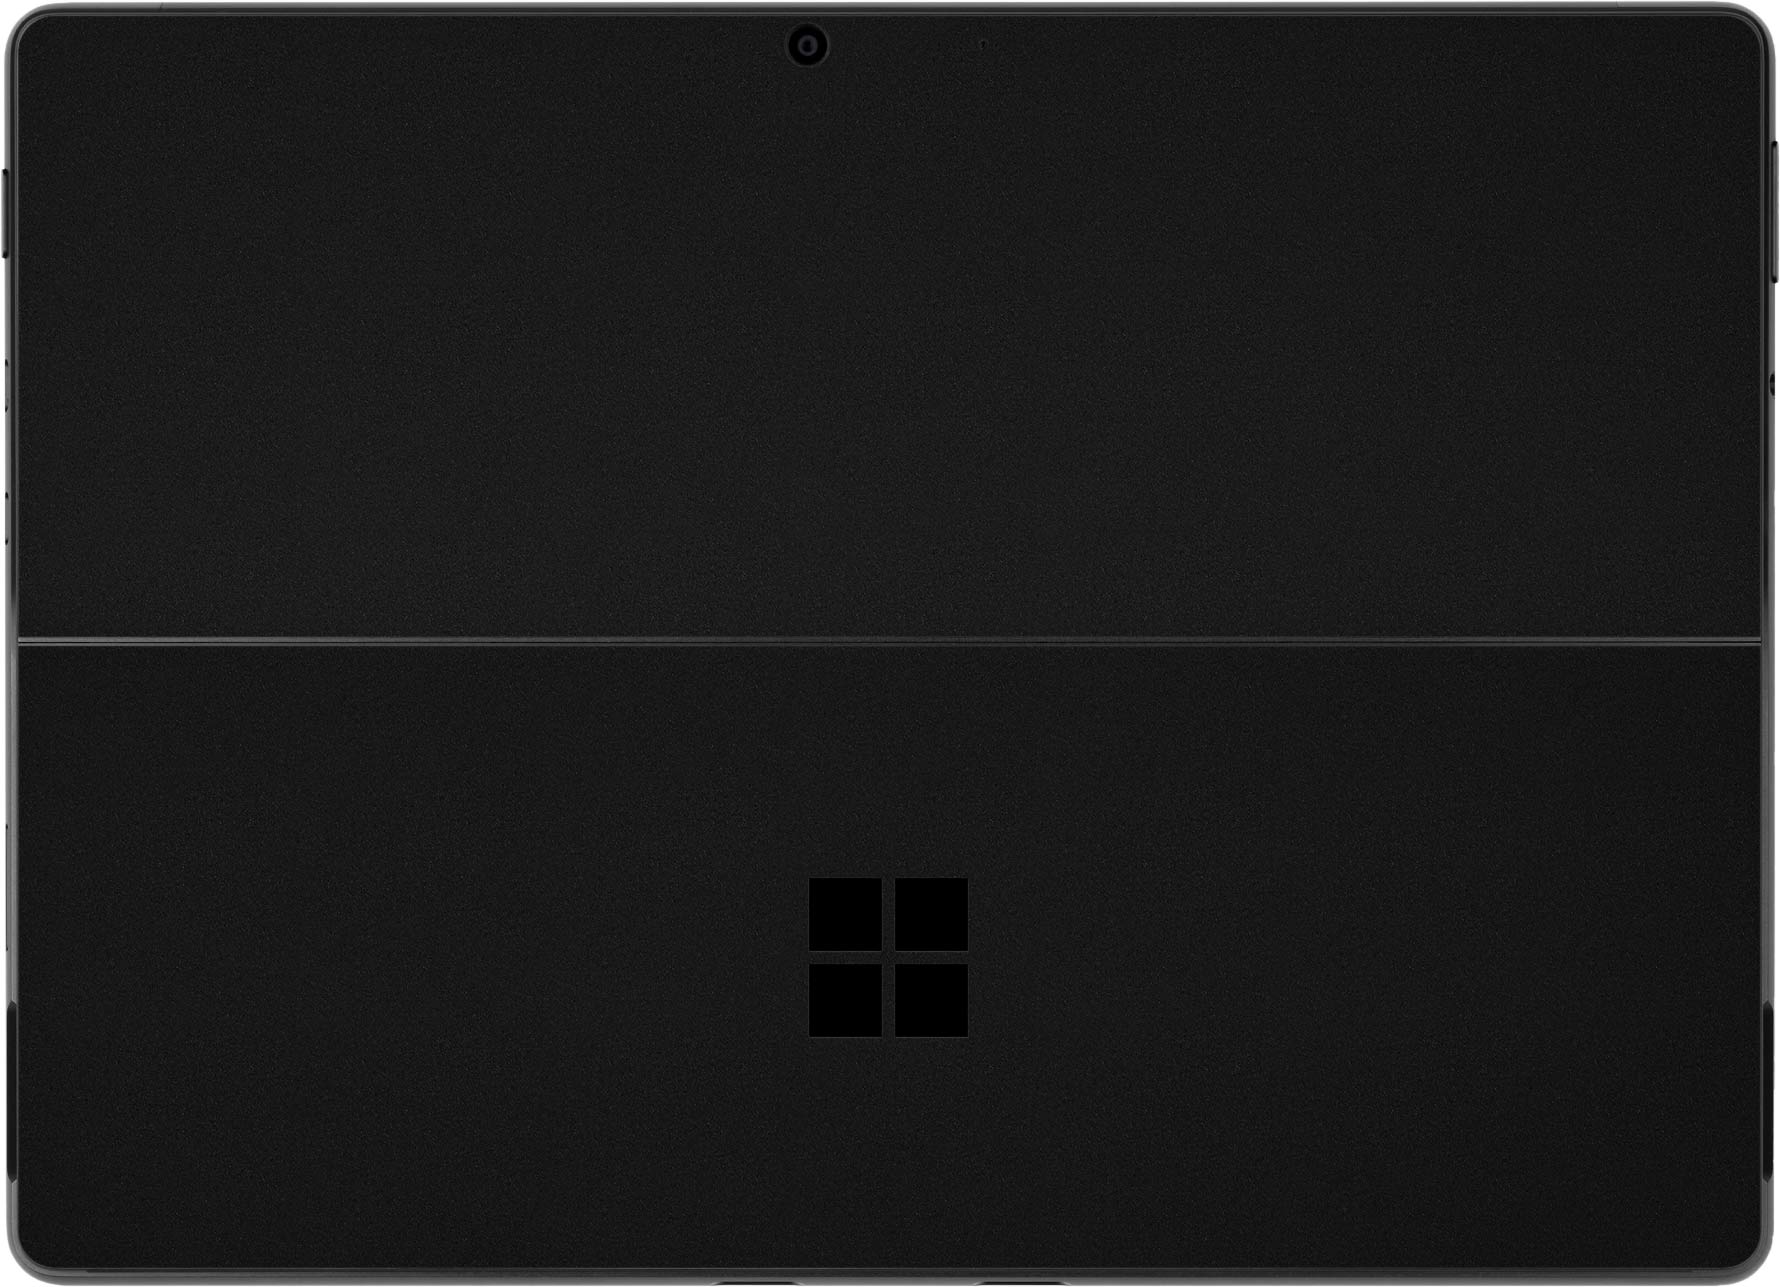 MasiBloom Autocollant de protection en vinyle anti-rayures pour tablette Microsoft Surface Pro 8 13 Noir pour Surface Pro 8 13 Ne convient pas pour Pro 7/7+ version 2020 version 2021 